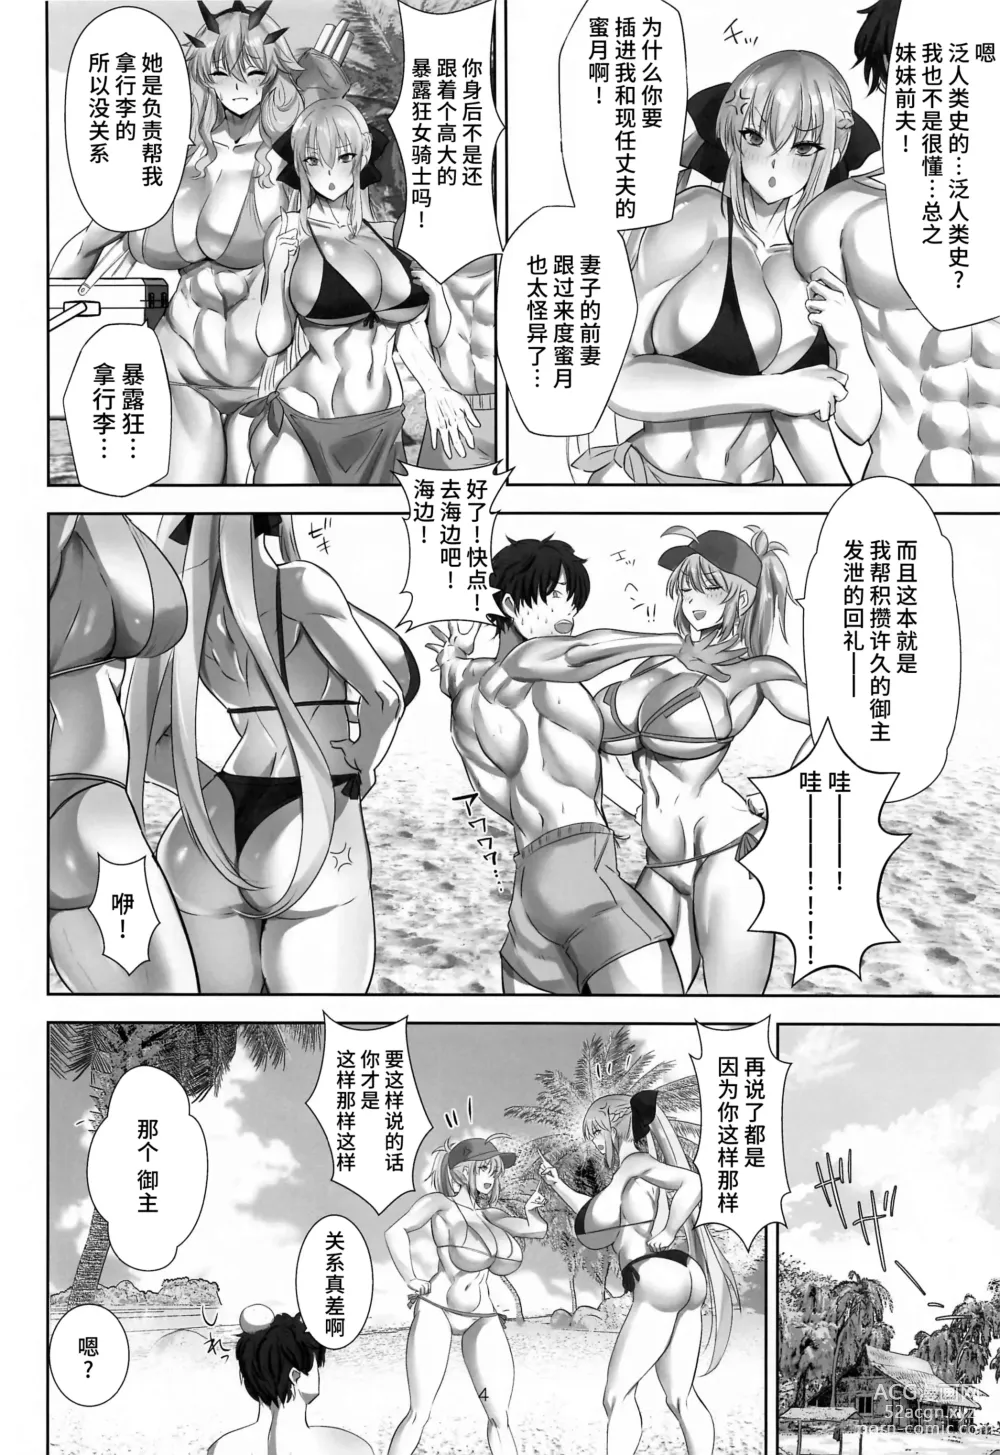 Page 3 of doujinshi Tokonatsu HareMoon